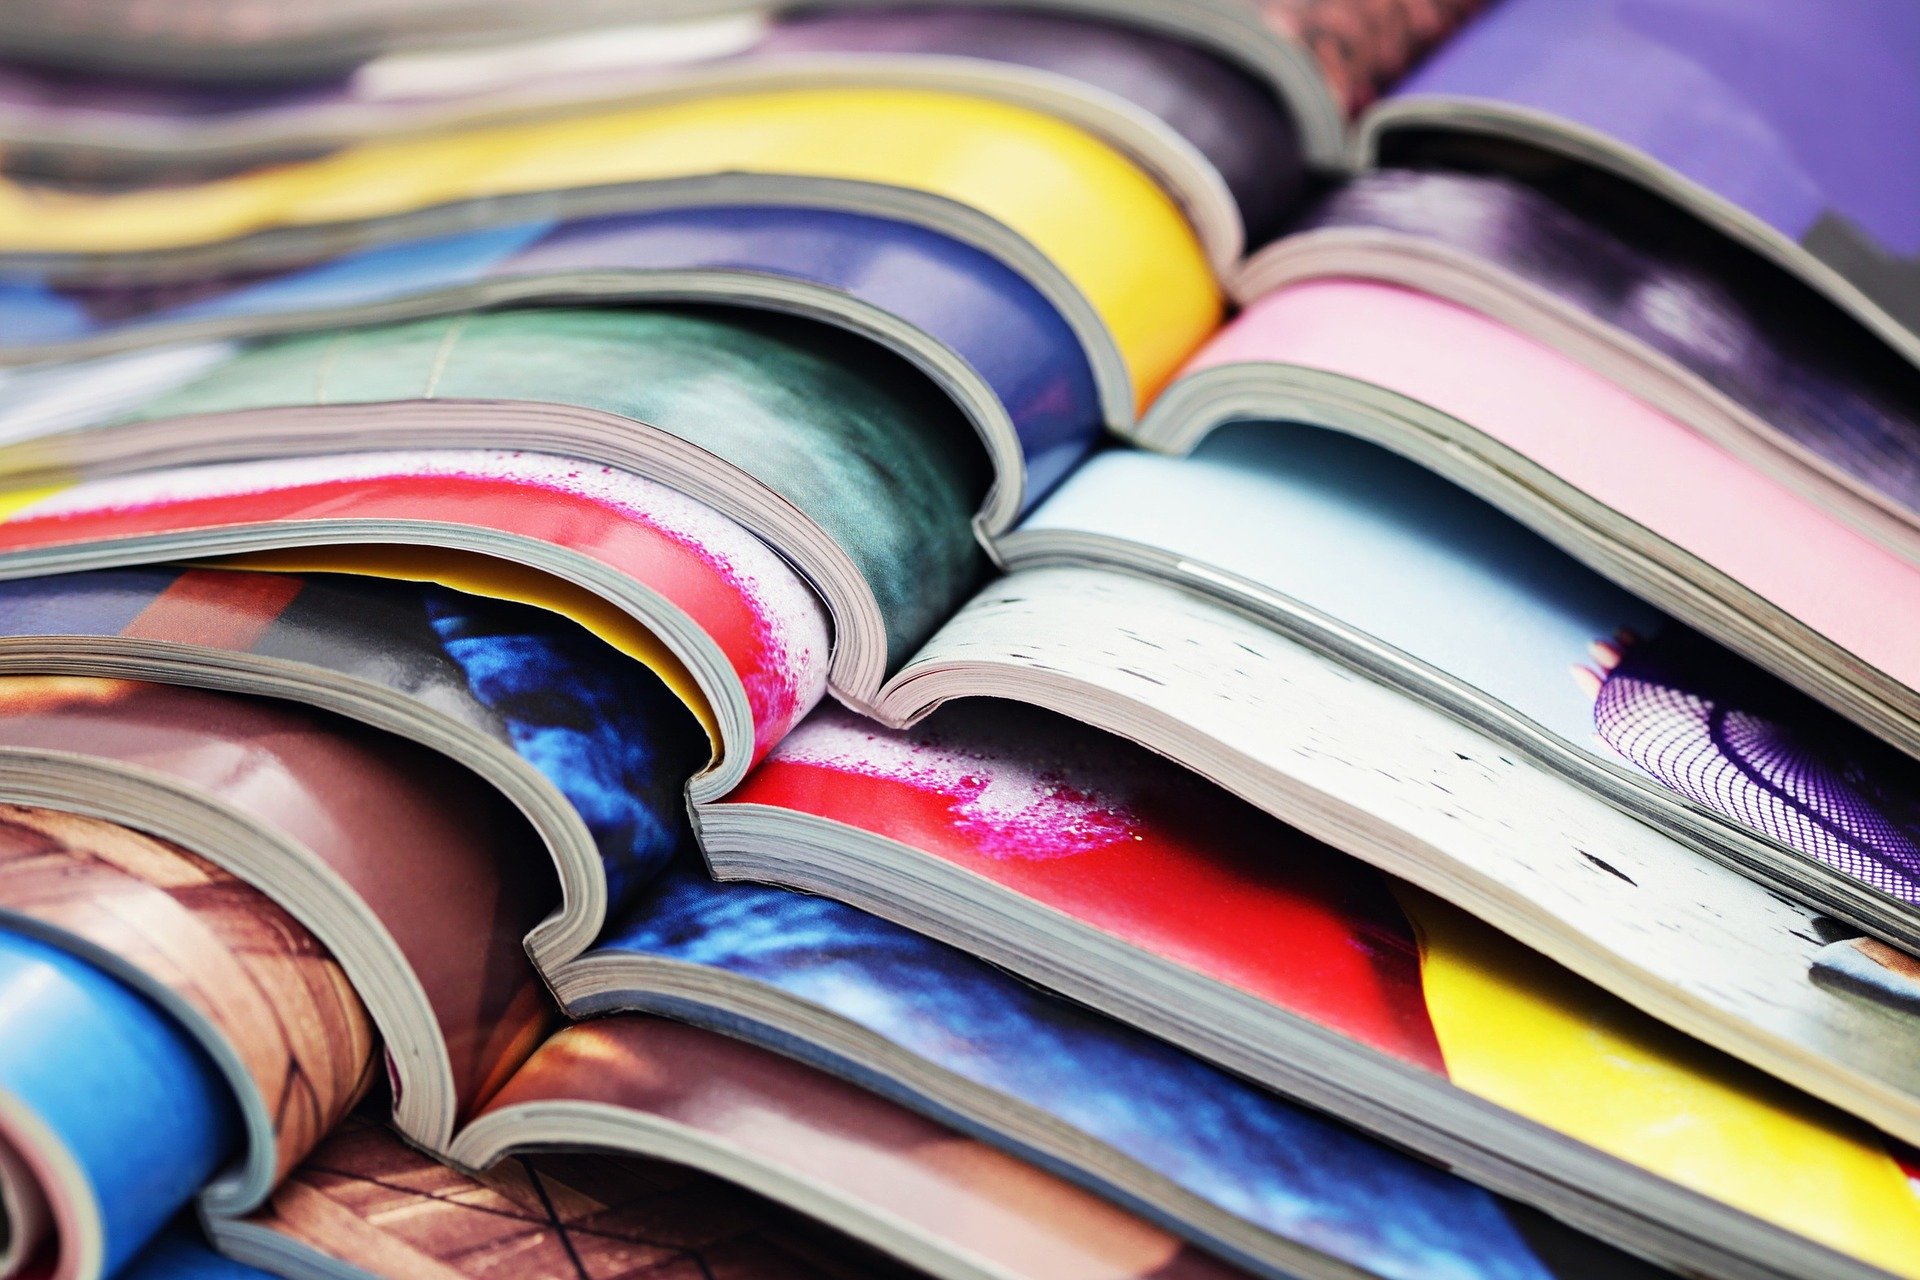 Photo of stacked, opened magazines